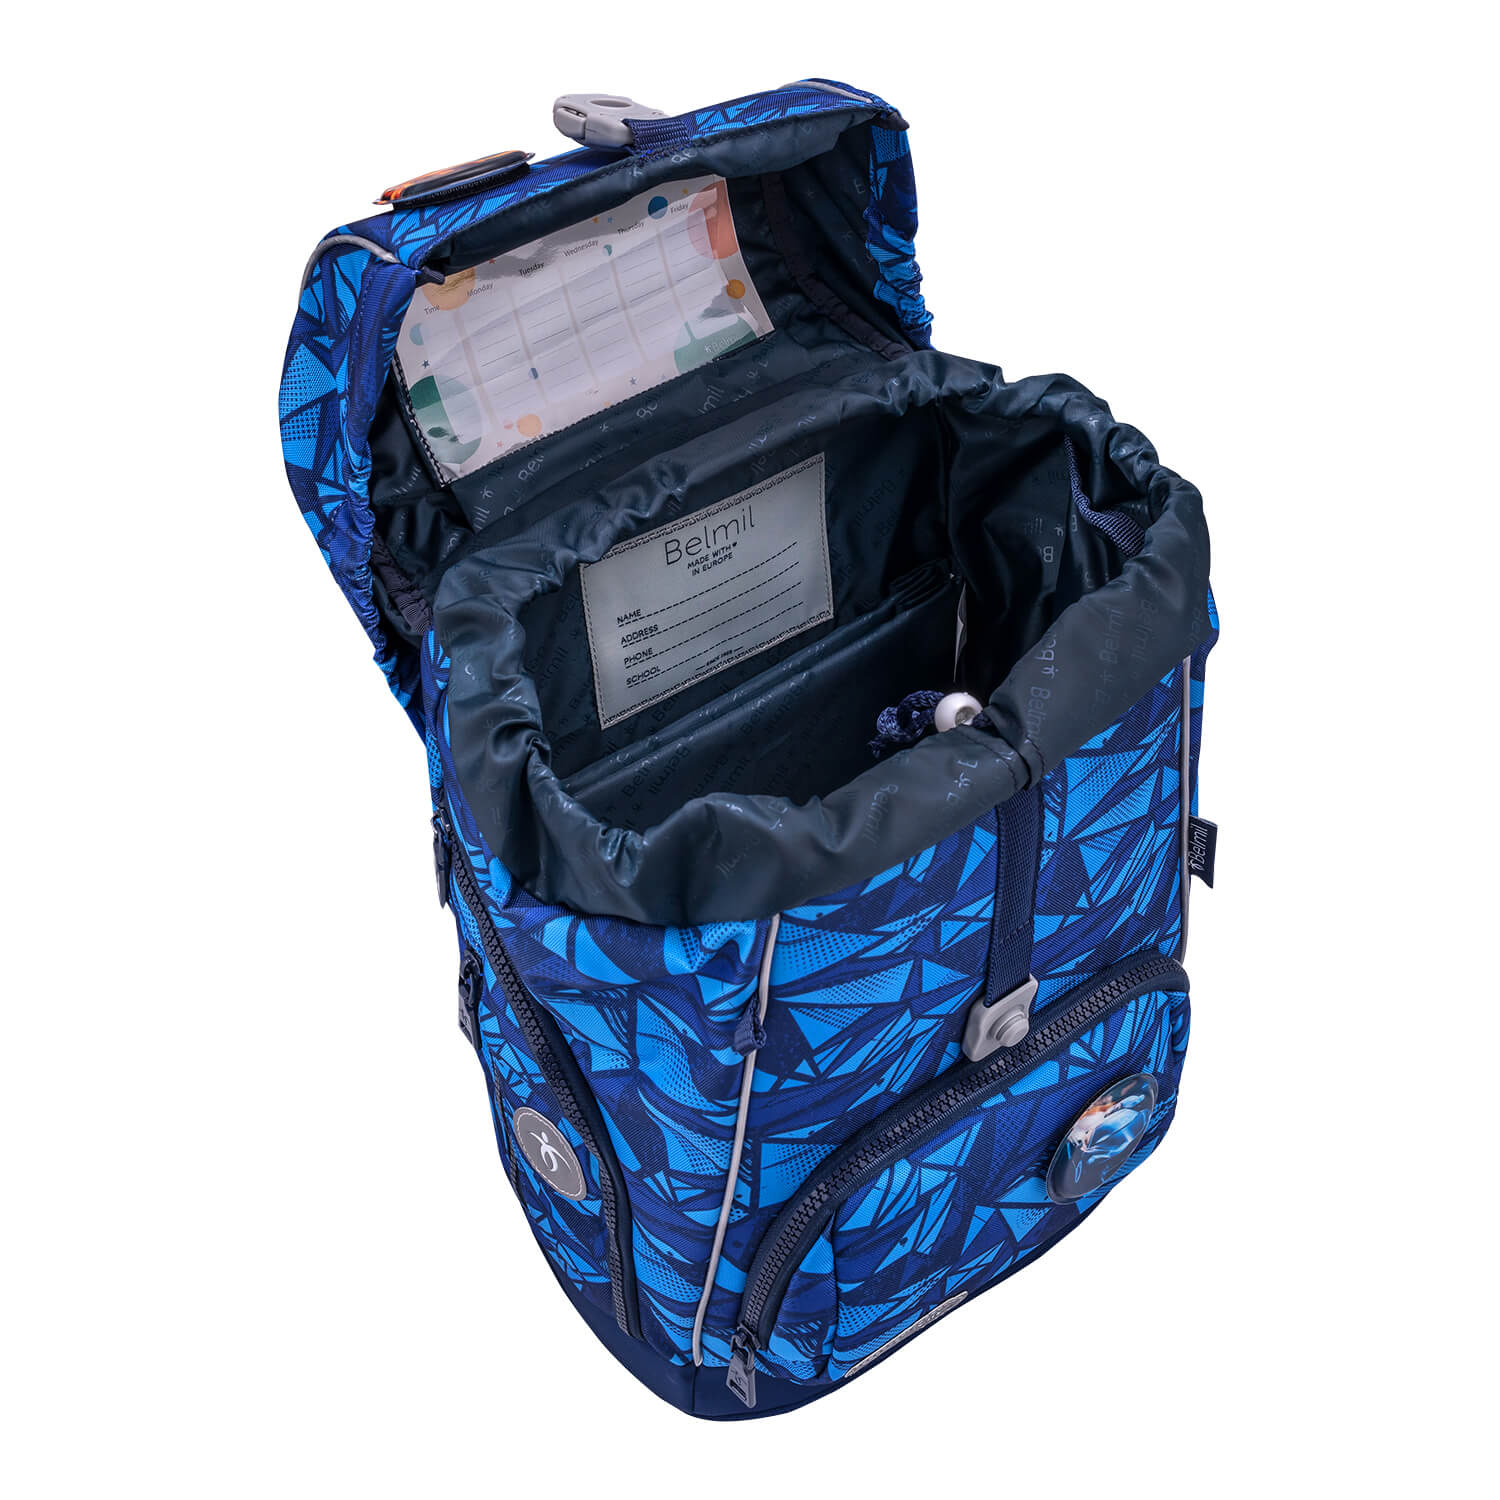 Premium Comfy Plus Glacier Blue Schoolbag set 5pcs.